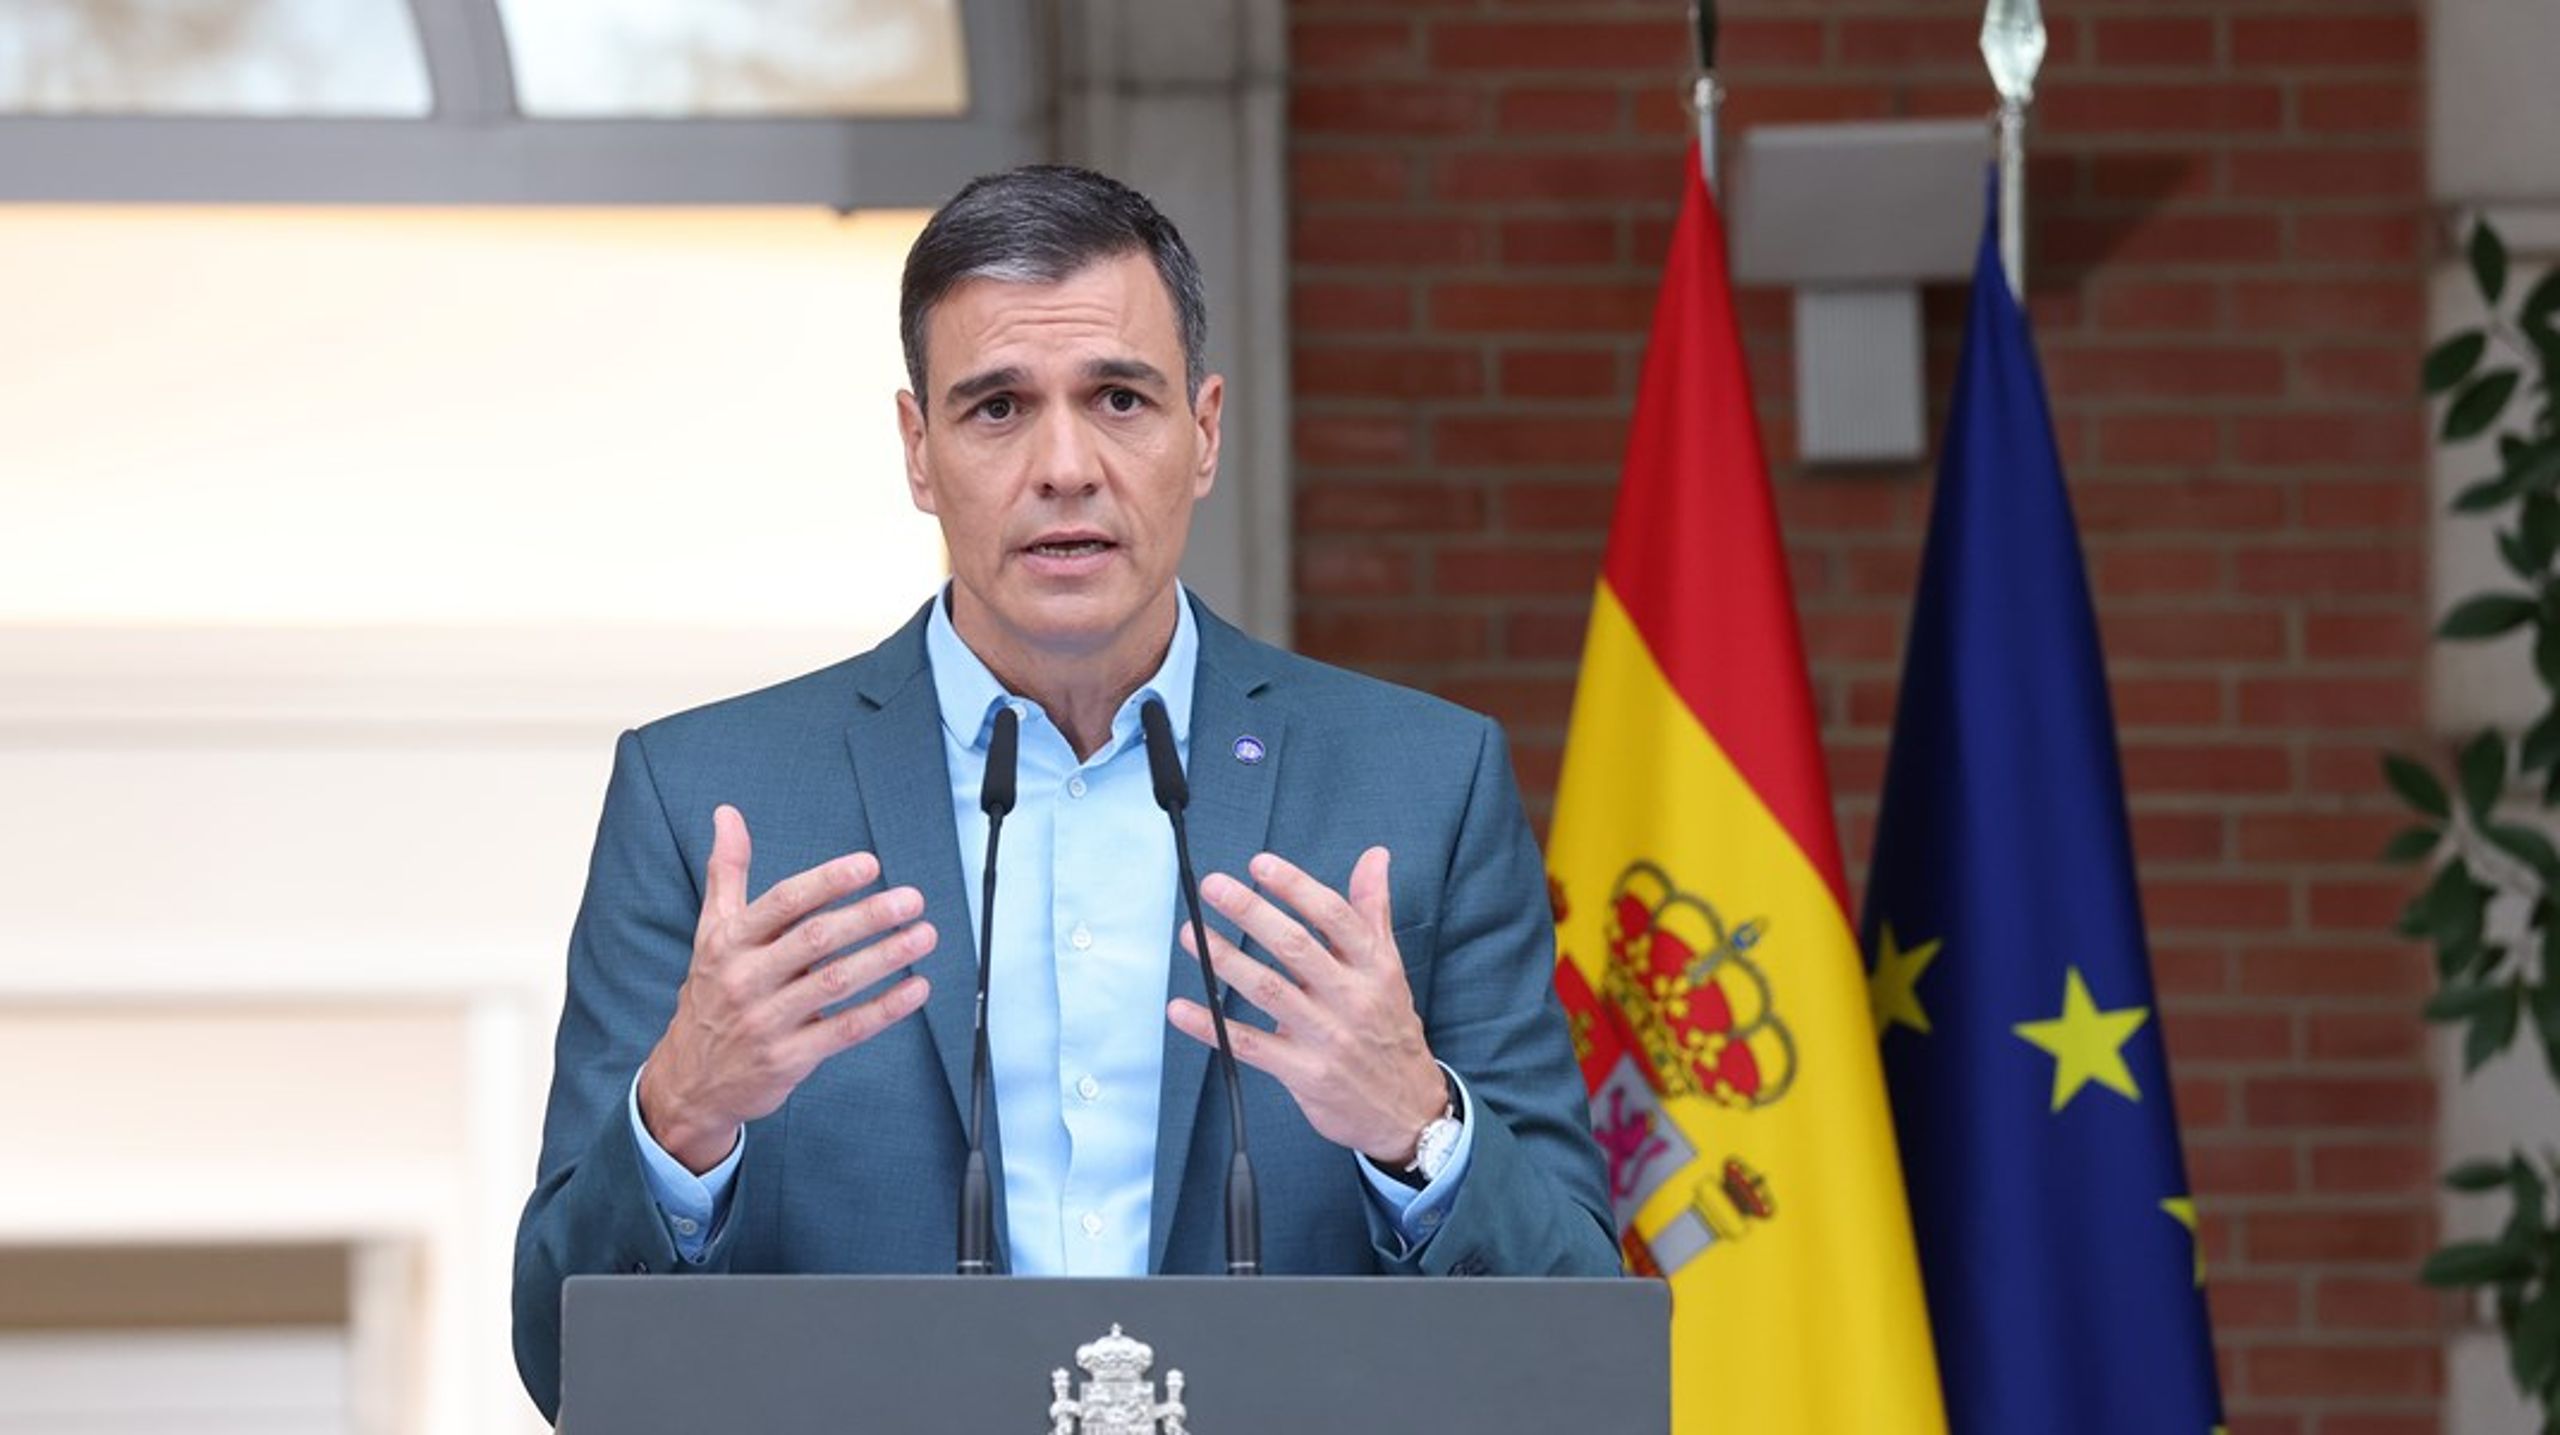 Det spanska ordförandeskapet var tänkt att höja landets profil inom EU – nu riskerar&nbsp;premiärminister Pedro Sánchez istället att de kommande månaderna&nbsp;behöva lägga allt fokus&nbsp;på att bilda en ny regering.&nbsp;